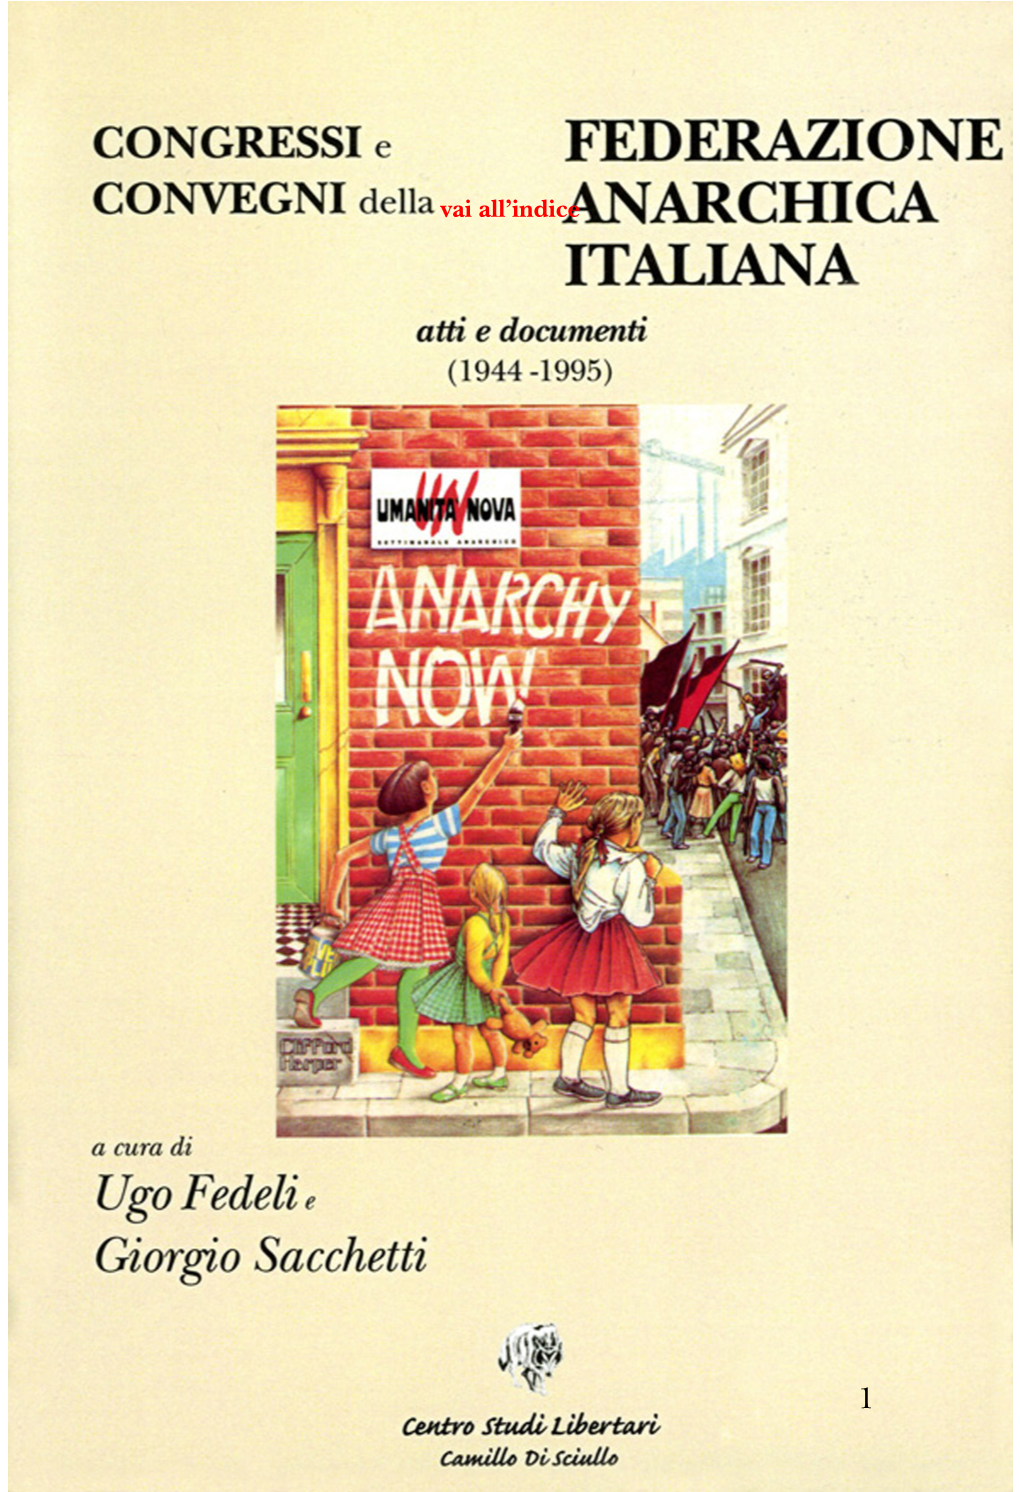 CONGRESSI E CONVEGNI DELLA FEDERAZIONE ANARCHICA ITALIANA ATTI E DOCUMENTI (1944 - 1995) a Cura Di Giorgio Sacchetti